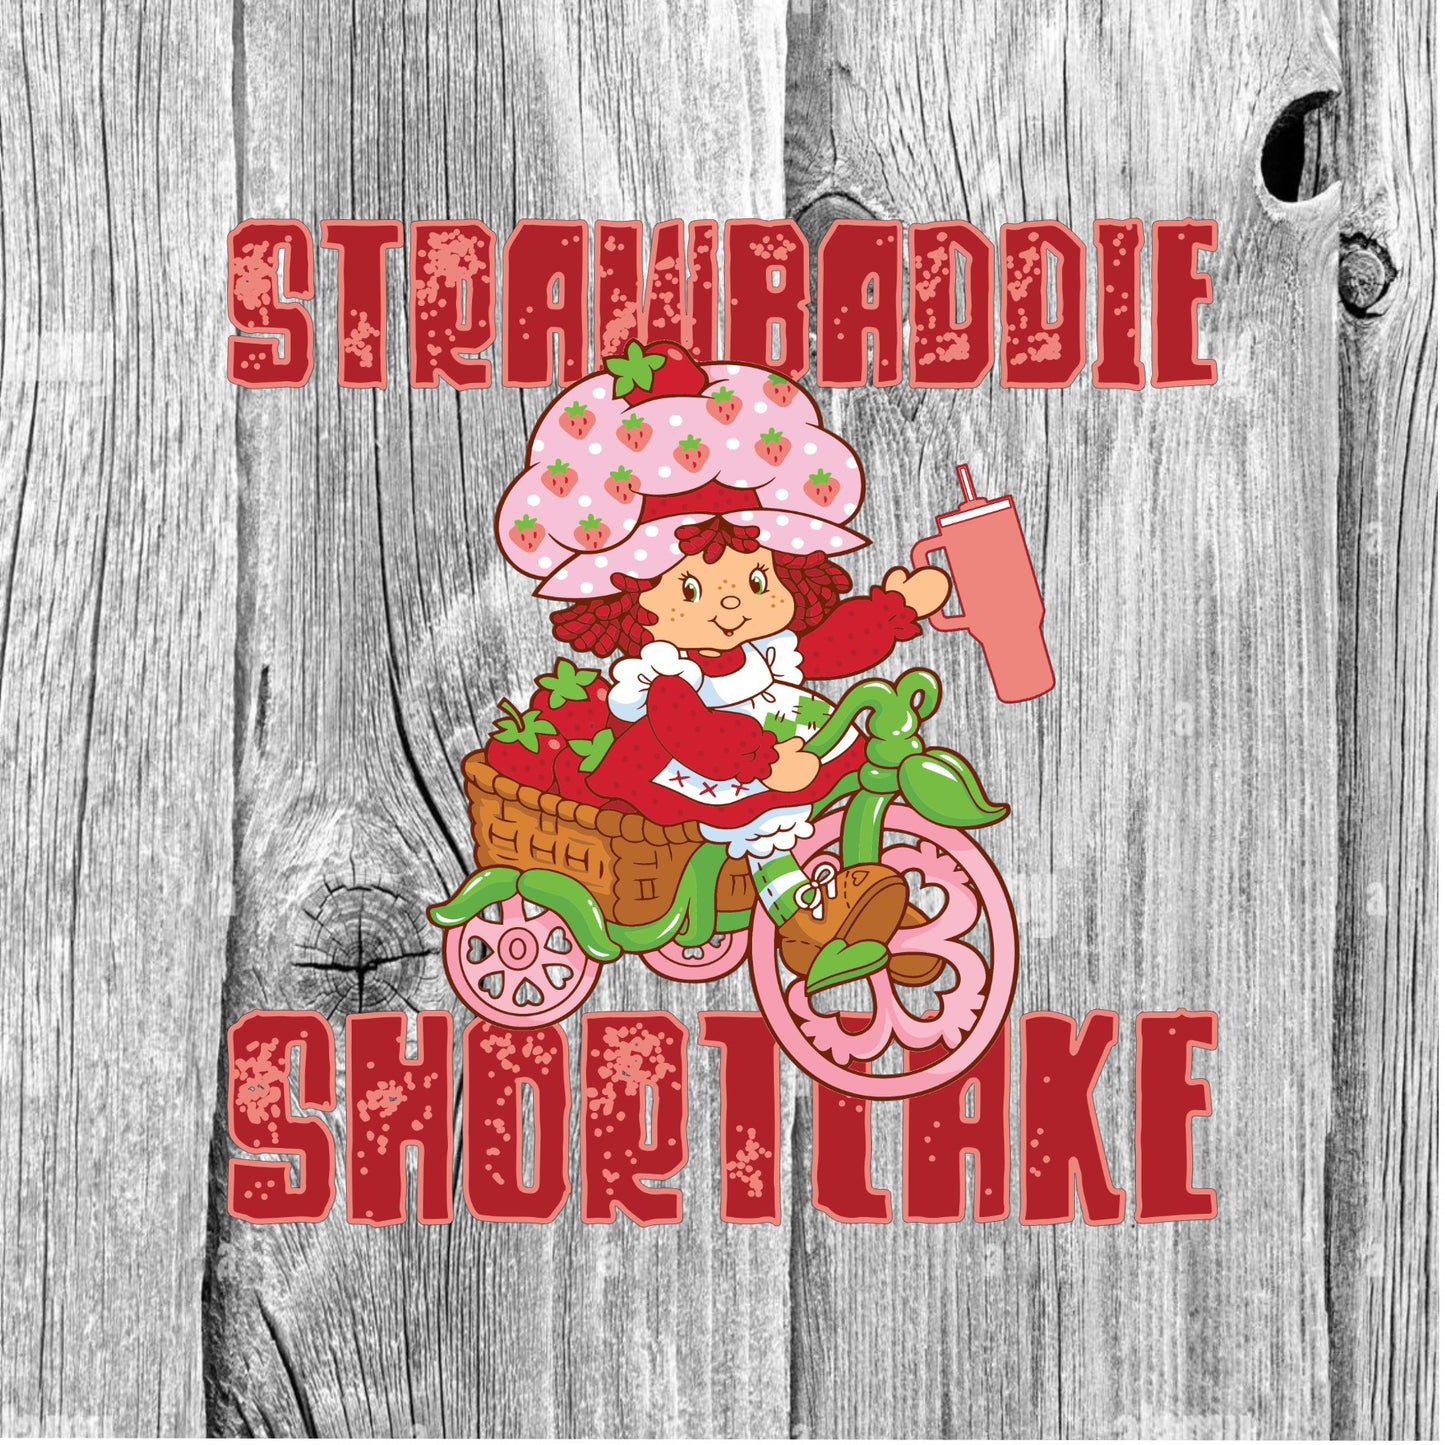 Strawbaddie Shortcake PNG